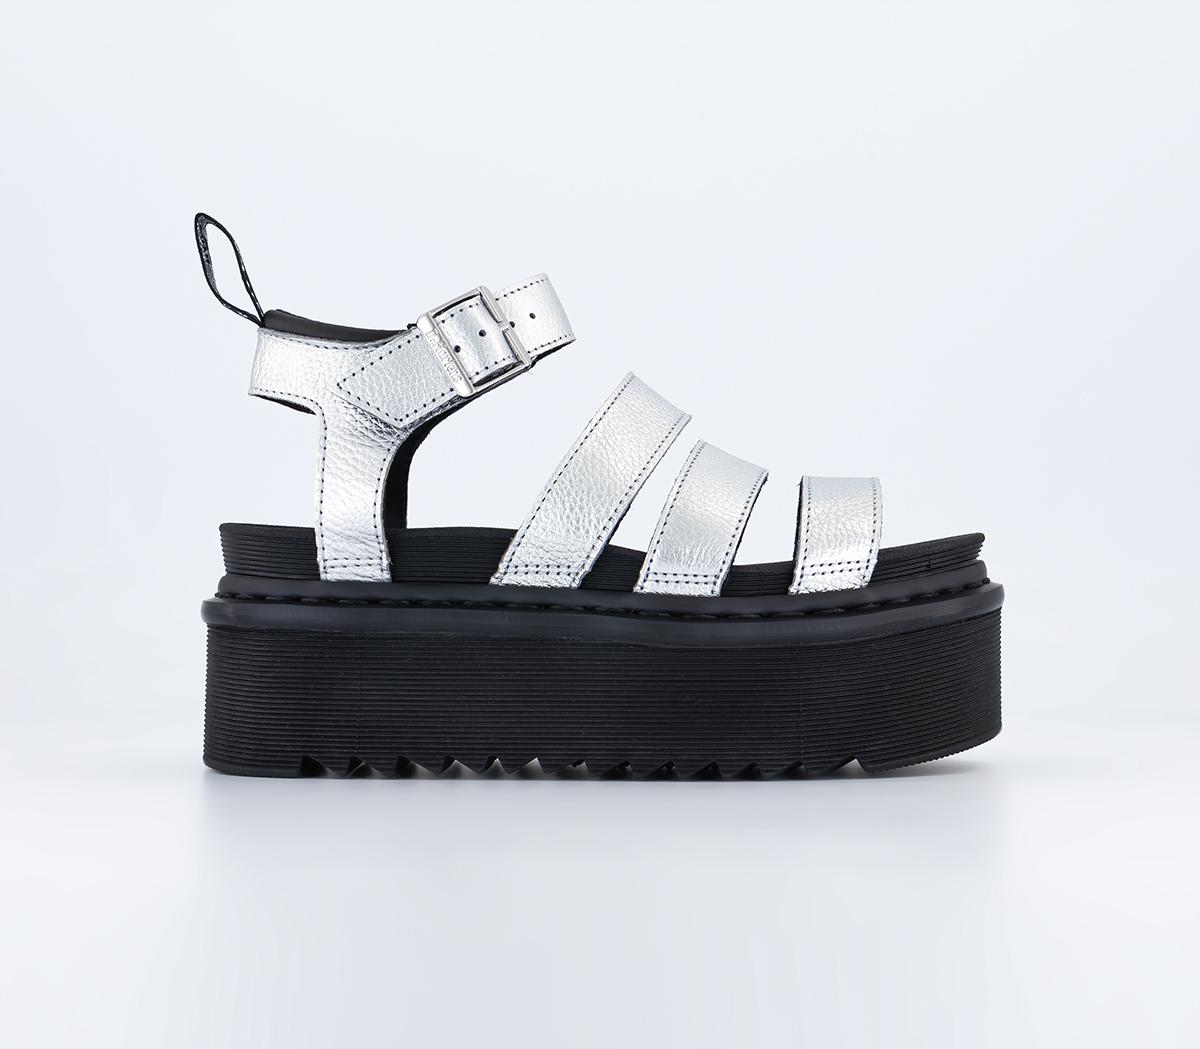 Dr. Martens Blaire Quad Sandals Silver Metallic Tumble - Women’s Sandals